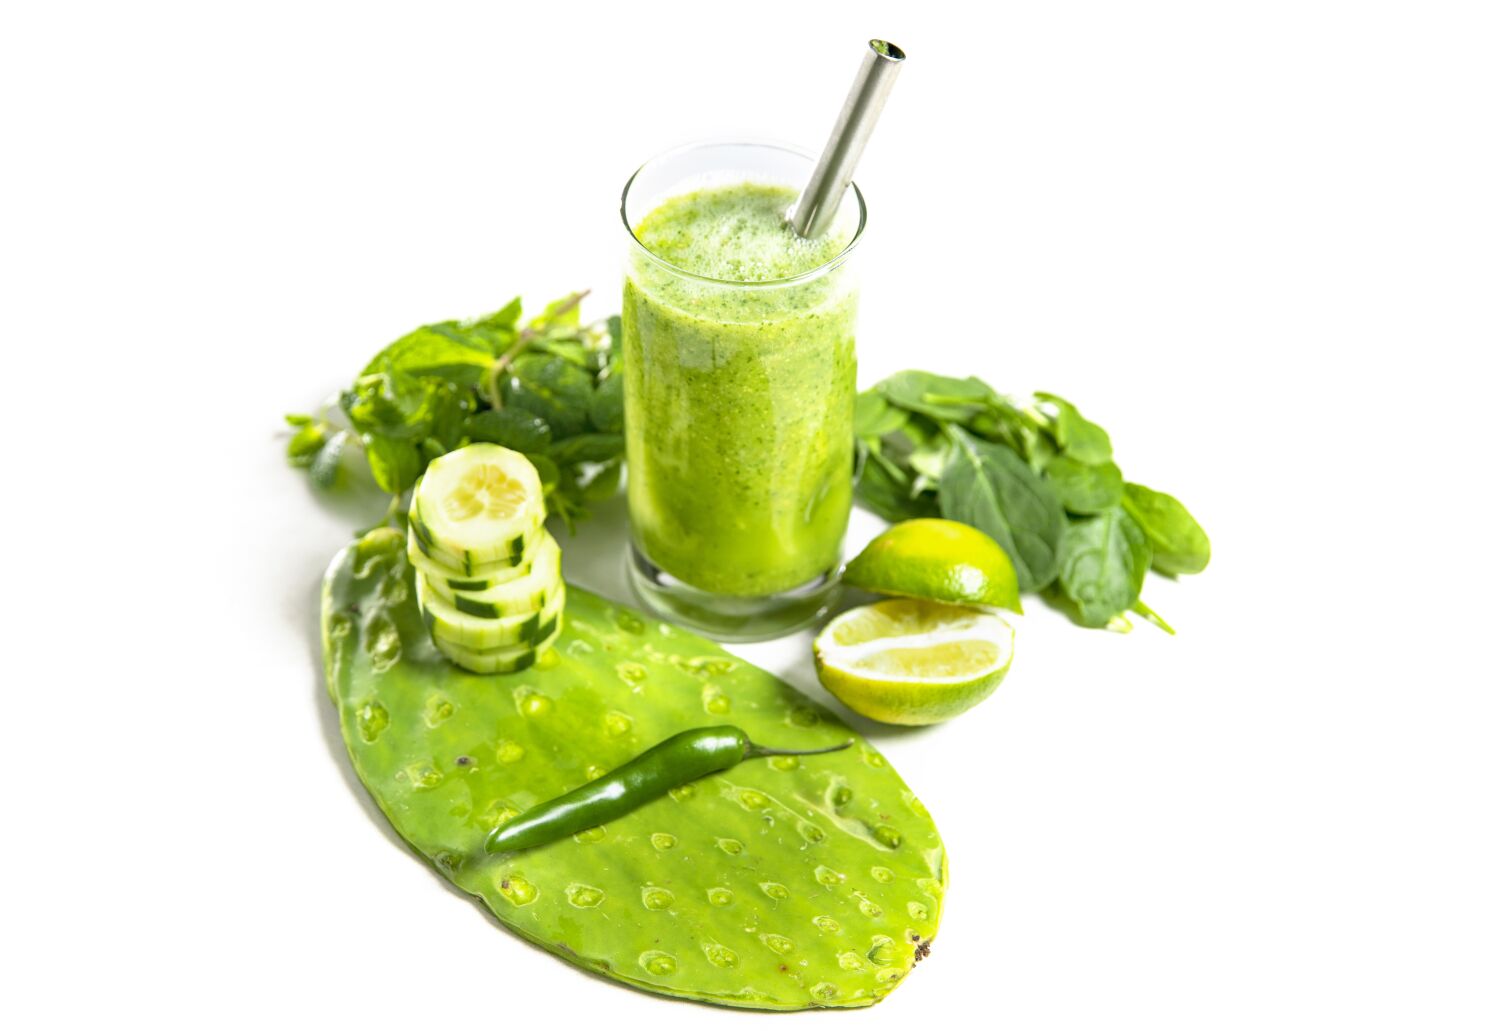 Jus hijau pedas: Jus hijau pedas là một loại nước ép có lợi cho sức khỏe và cung cấp năng lượng. Nó được pha chế từ nhiều loại rau củ, giúp cung cấp các chất dinh dưỡng cần thiết cho cơ thể. Đặc biệt, với hương vị đặc biệt của nó, jus này sẽ làm cho bạn cảm thấy tươi trẻ và khoẻ mạnh. Hãy xem hình ảnh liên quan để thưởng thức jus hijau pedas này.